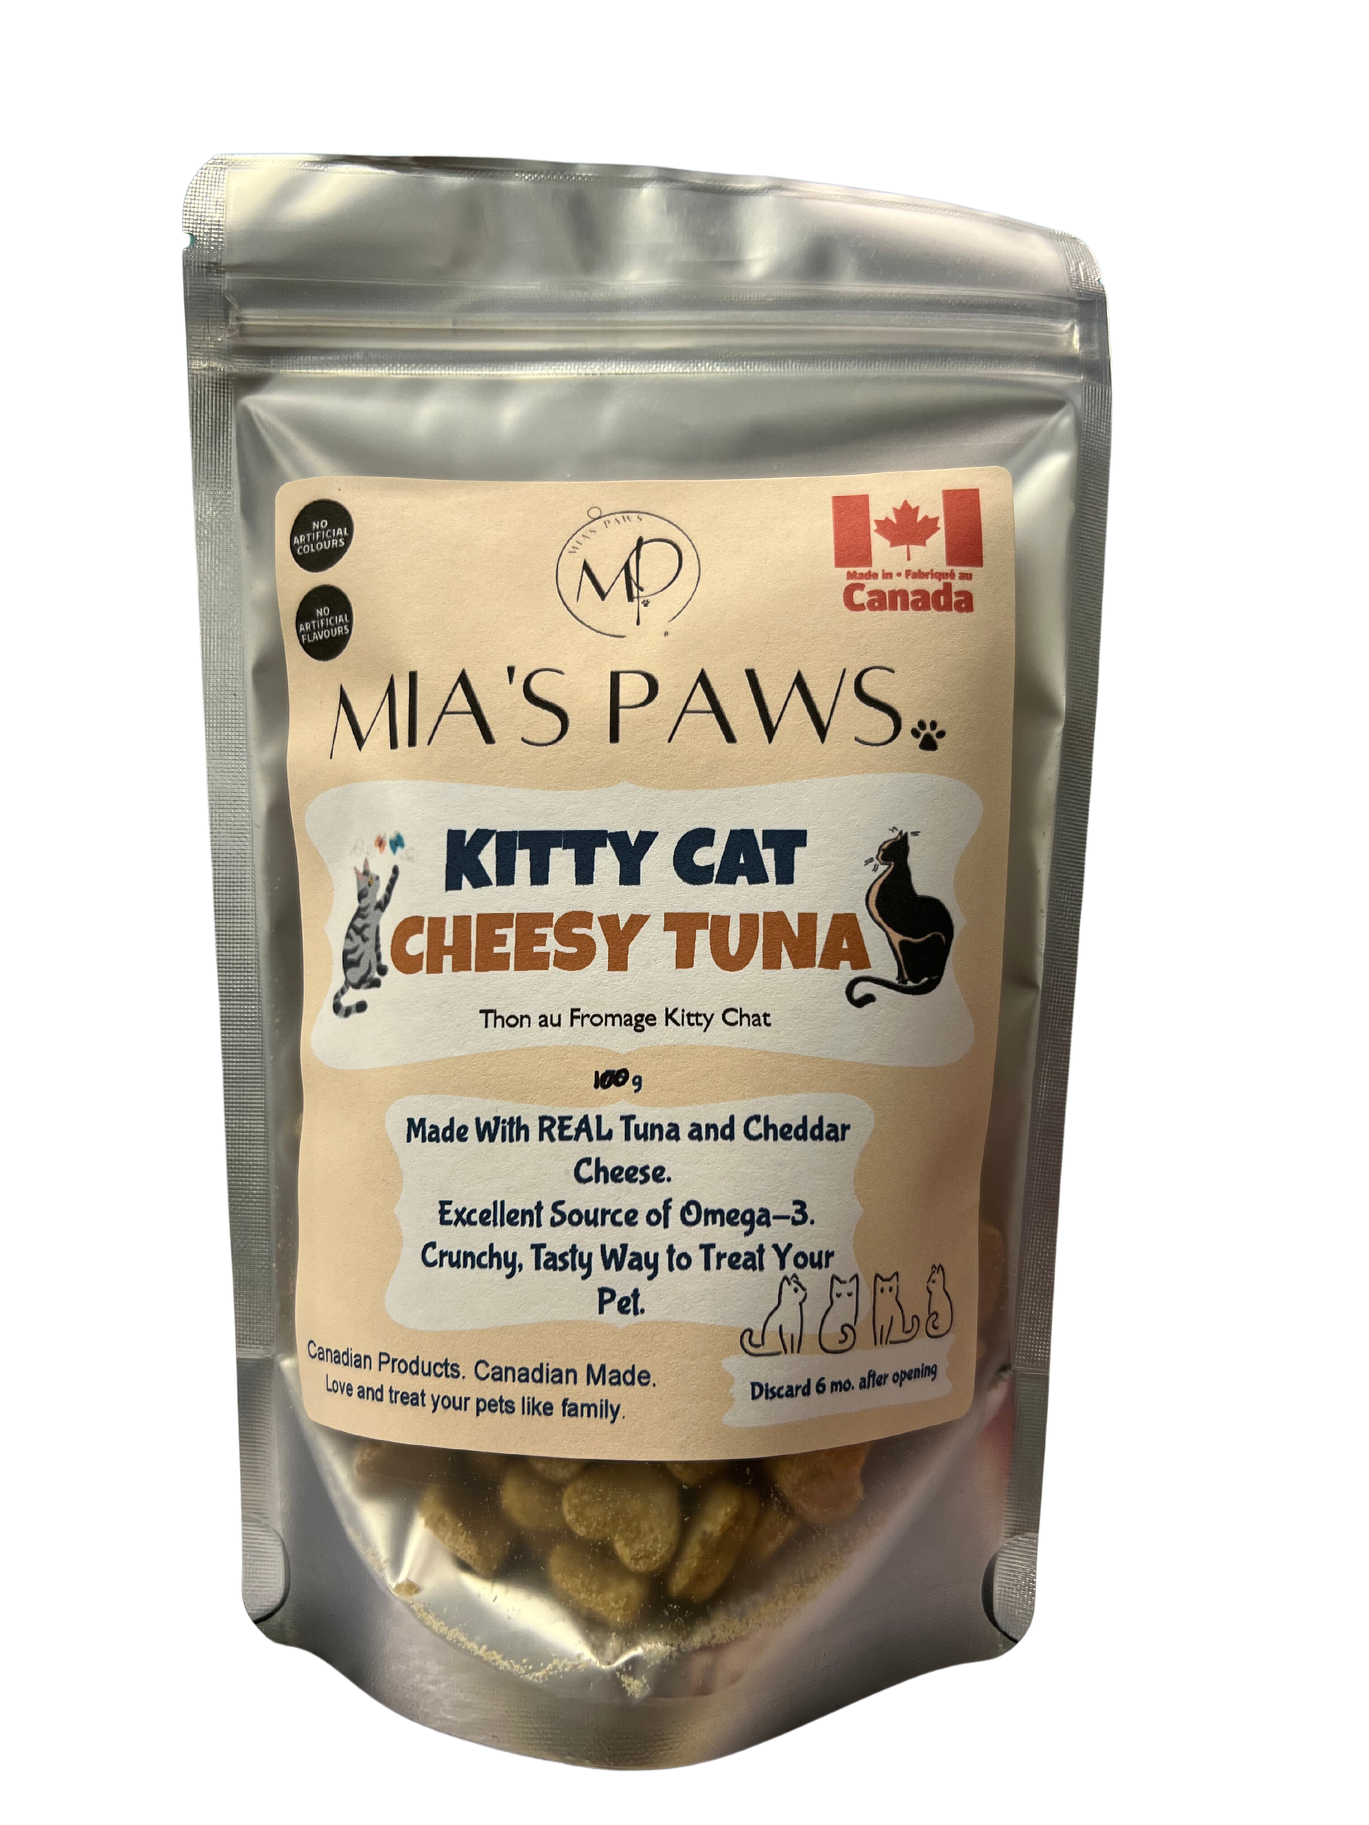 Kitty Cat Cheesy Tuna - Mia's Paws